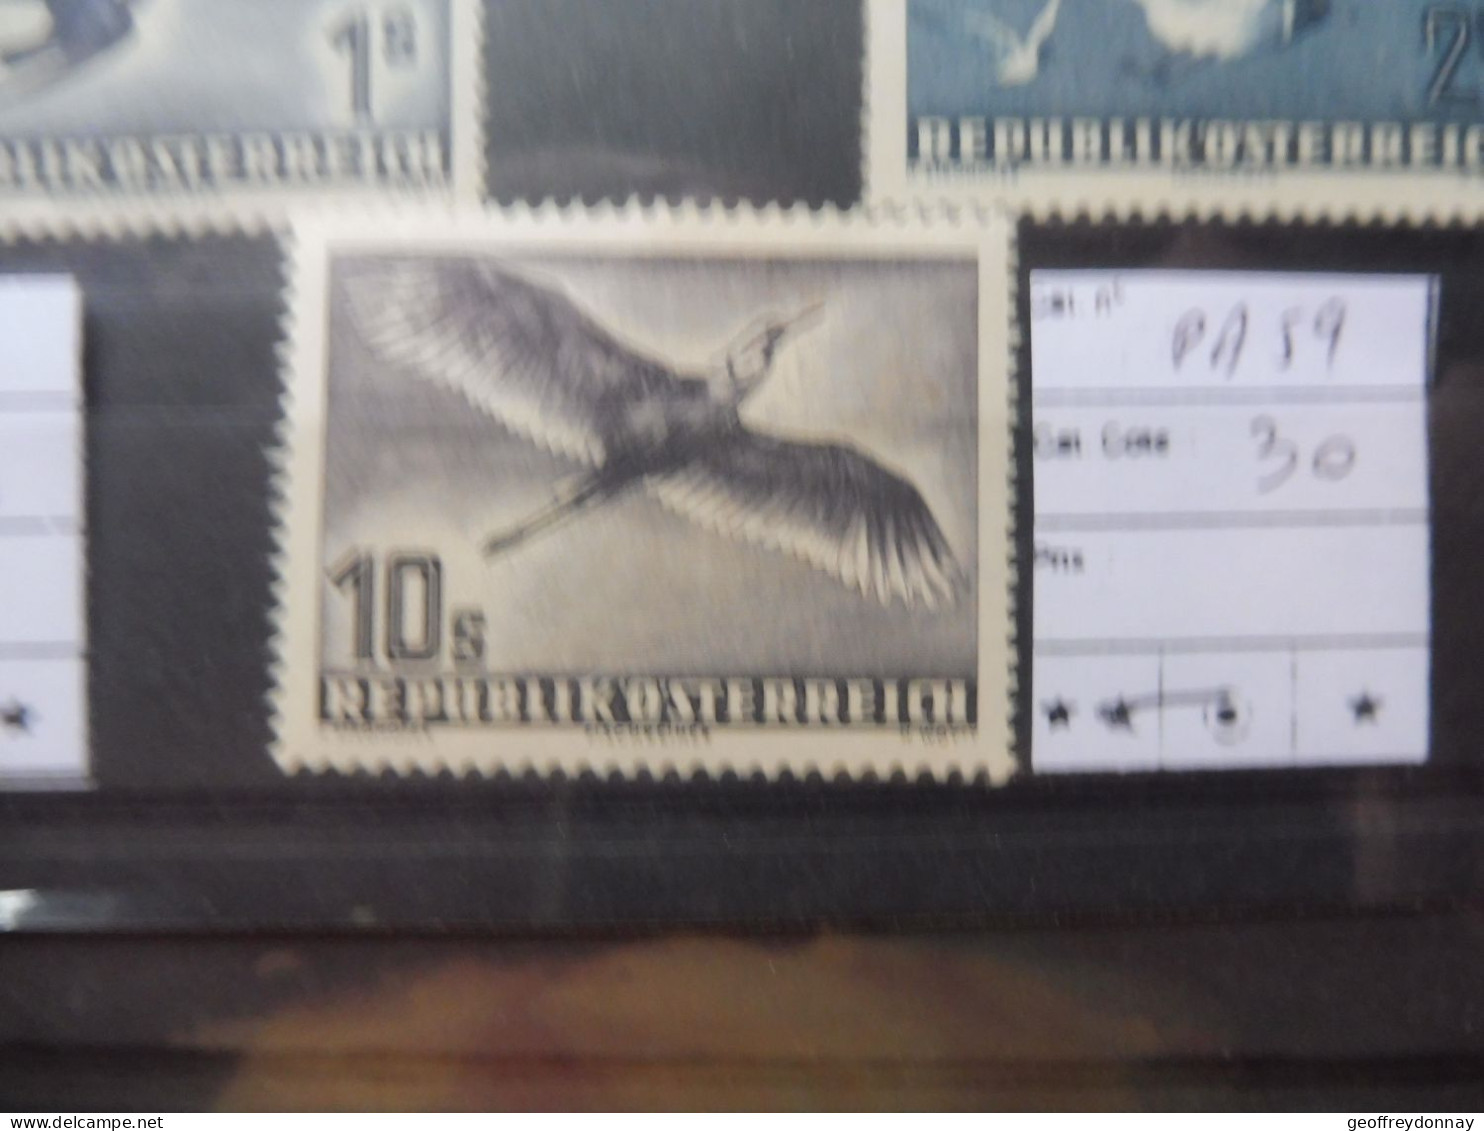 Autriche Osterreich Austria Pa Poste Aerienne 59  Mh Neuf * Plakken Perfect Parfait Etat Perfect Oiseaux Vogels Birds - Unused Stamps